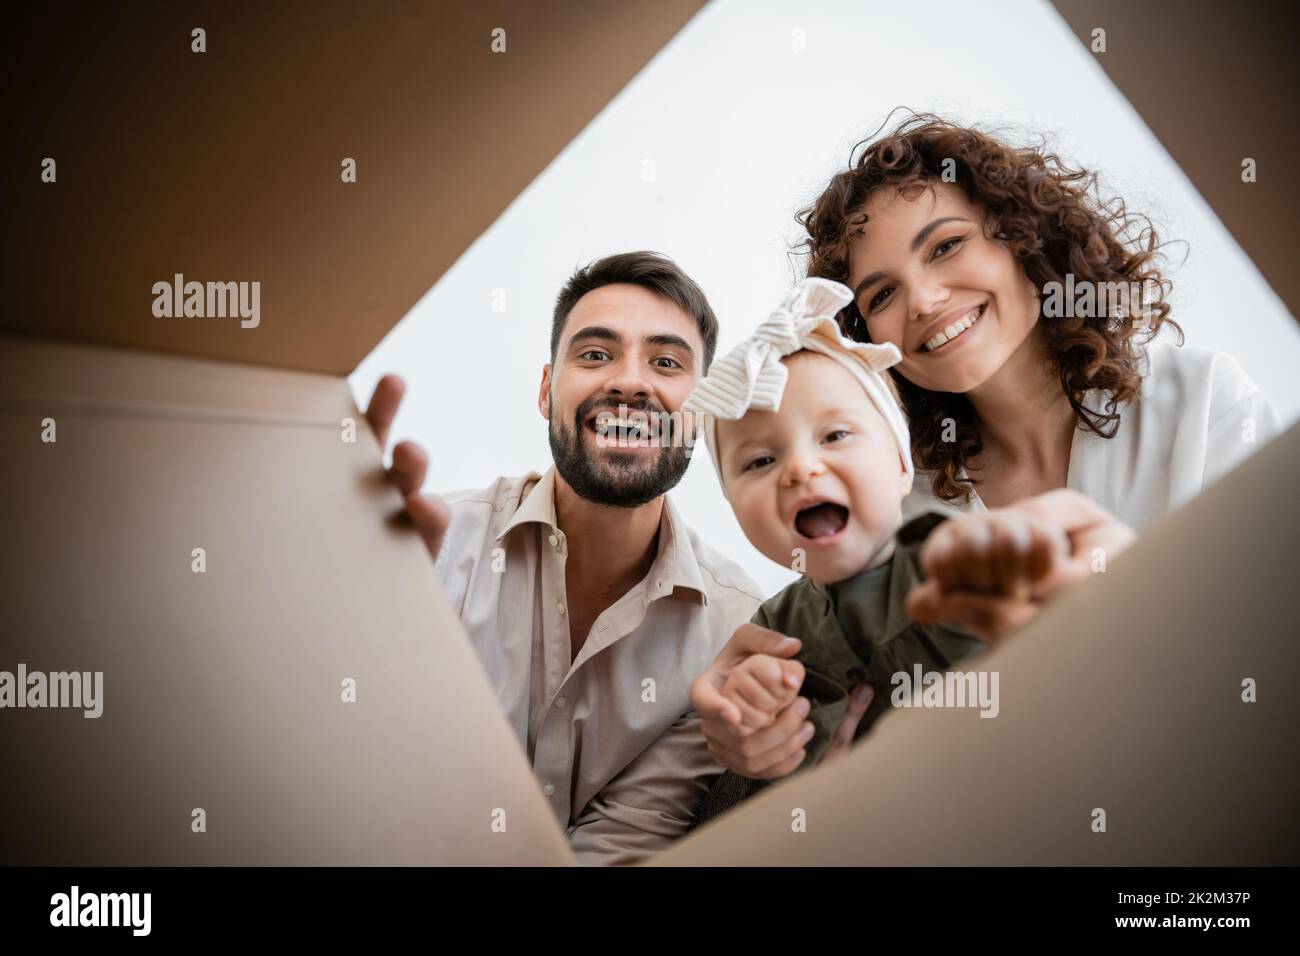 vista inferior de los padres felices y la niña infante emocionada mirando dentro de la caja de cartón, imagen de stock Foto de stock